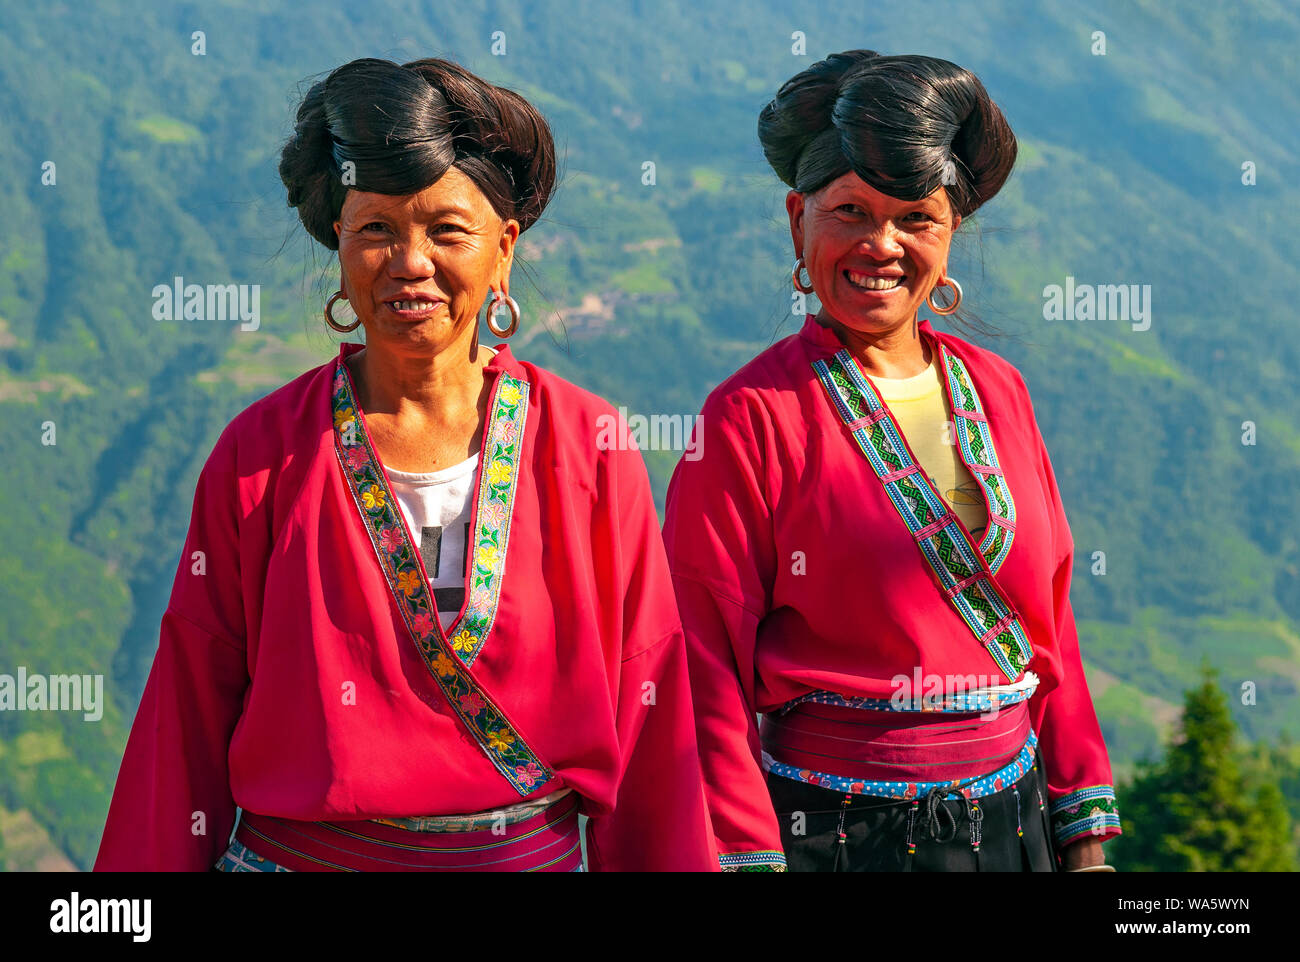 Lächelnd langhaarige Frauen der Yao ethnische Gruppe durch die Reisterrassen von longsheng Ping in der Provinz Guangxi, Volksrepublik China. Stockfoto